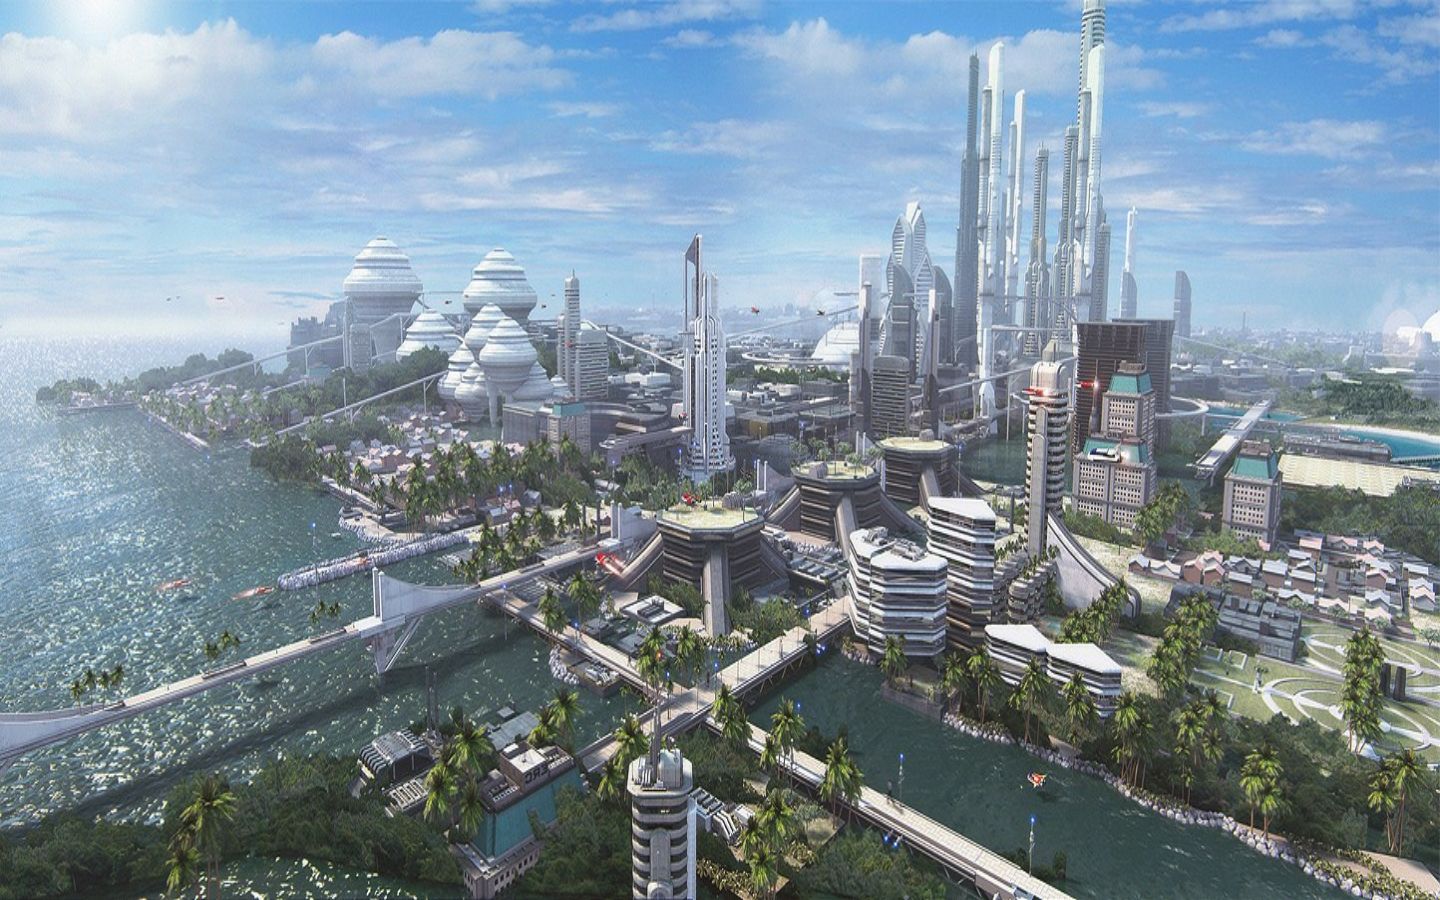 Future лет. Дубай 2050 город будущего. Экуменополис. Экогород будущего концепт Левиафан. Экуменополис Sci-Fi.